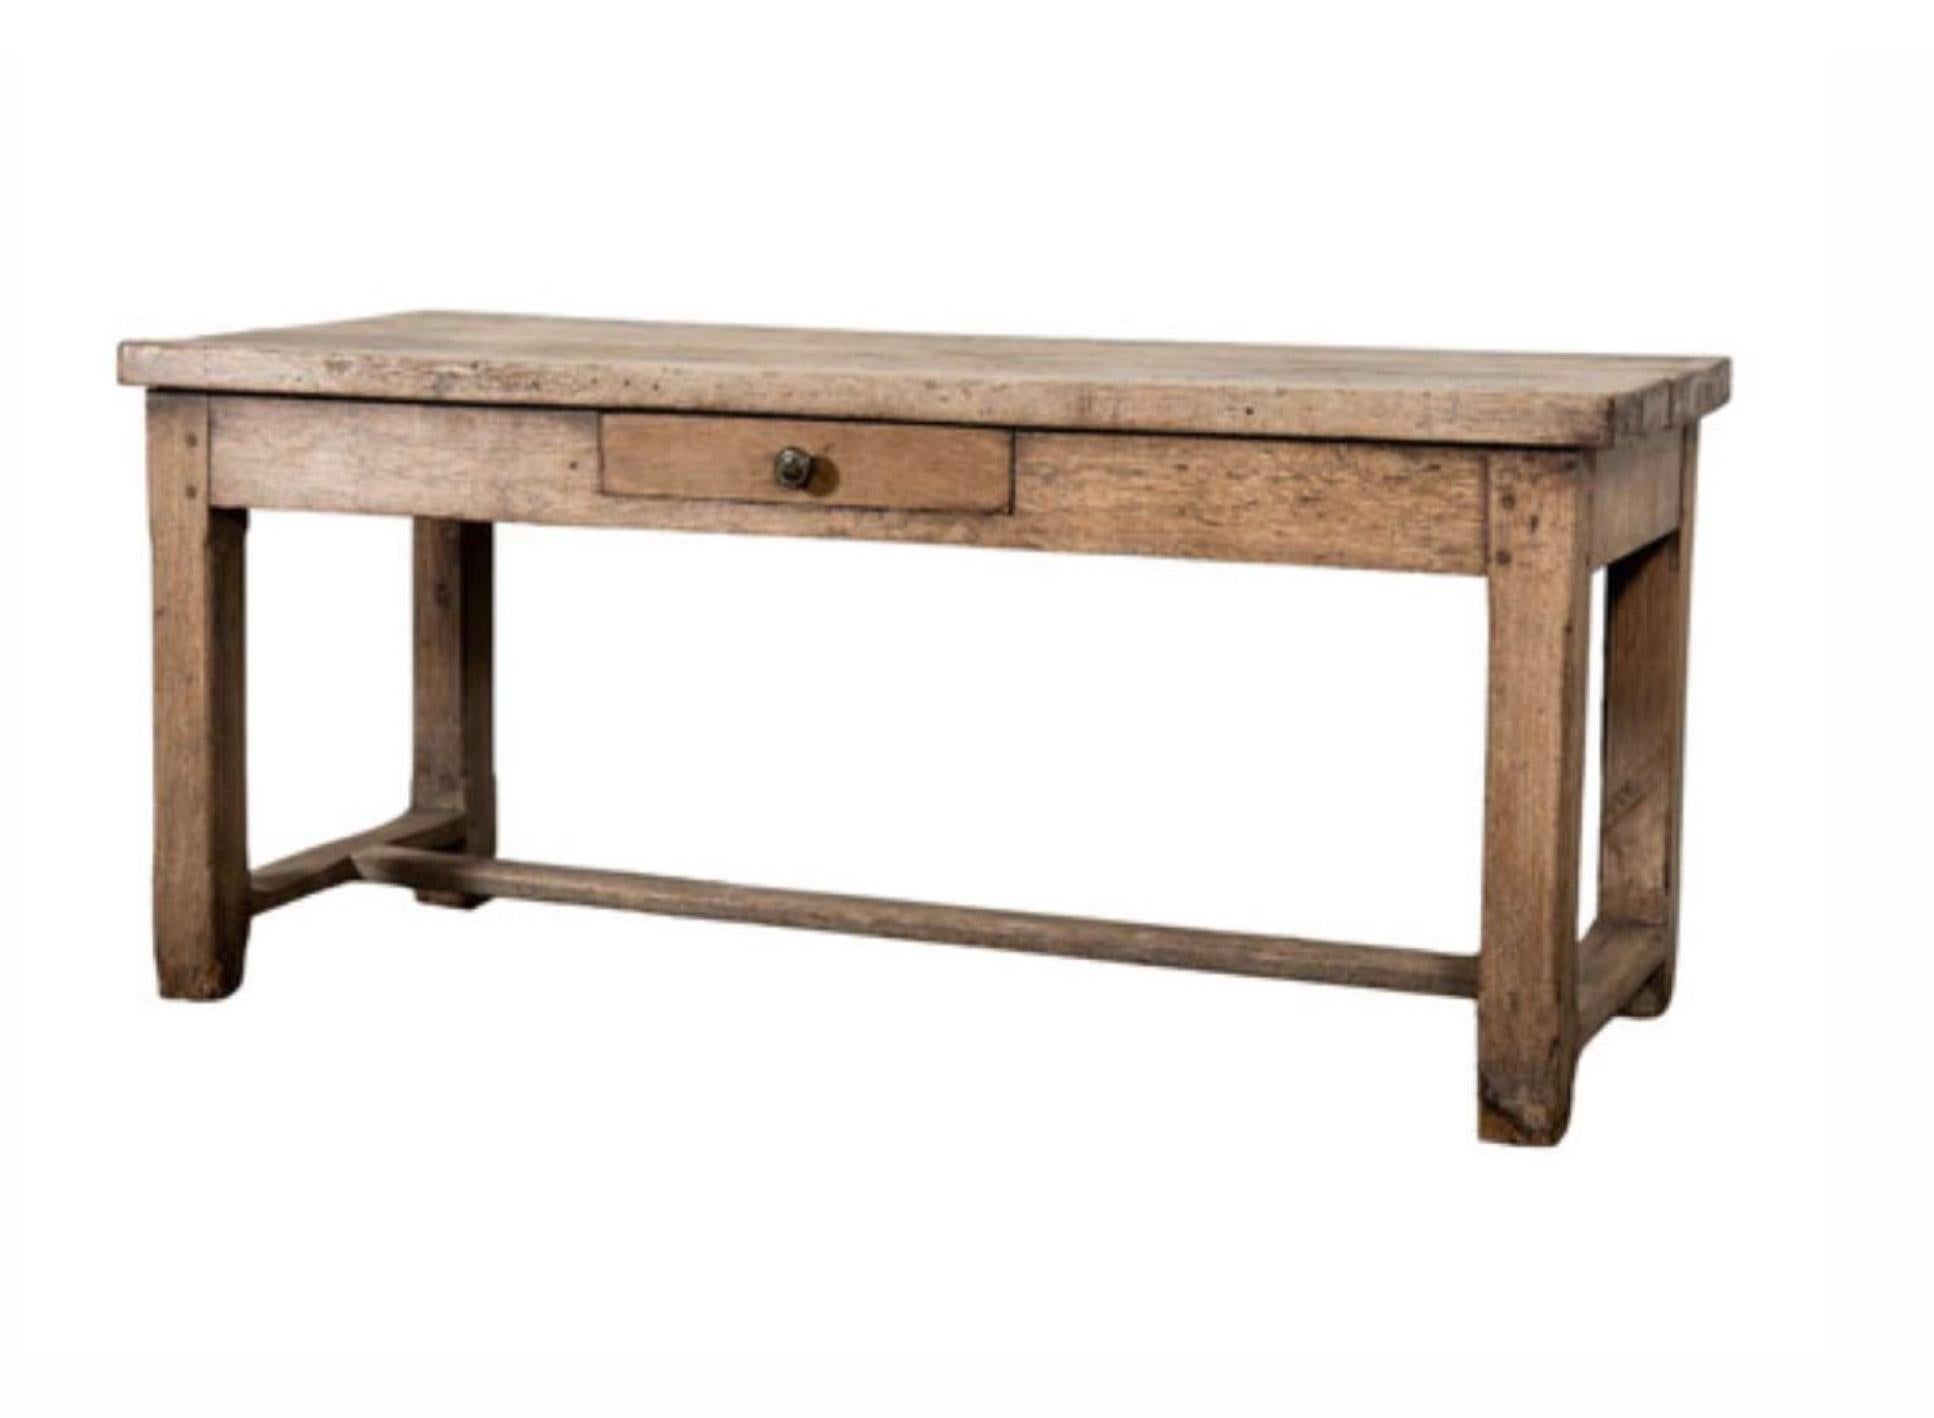 Charmanter Bauernhoftisch aus französischer Provinzeiche aus den frühen 1900er Jahren, perfekt gealtert und verwittert. Dieses vielseitige Möbel wird von einem H-förmigen Sockel getragen und verfügt über eine praktische Einzelschublade an der